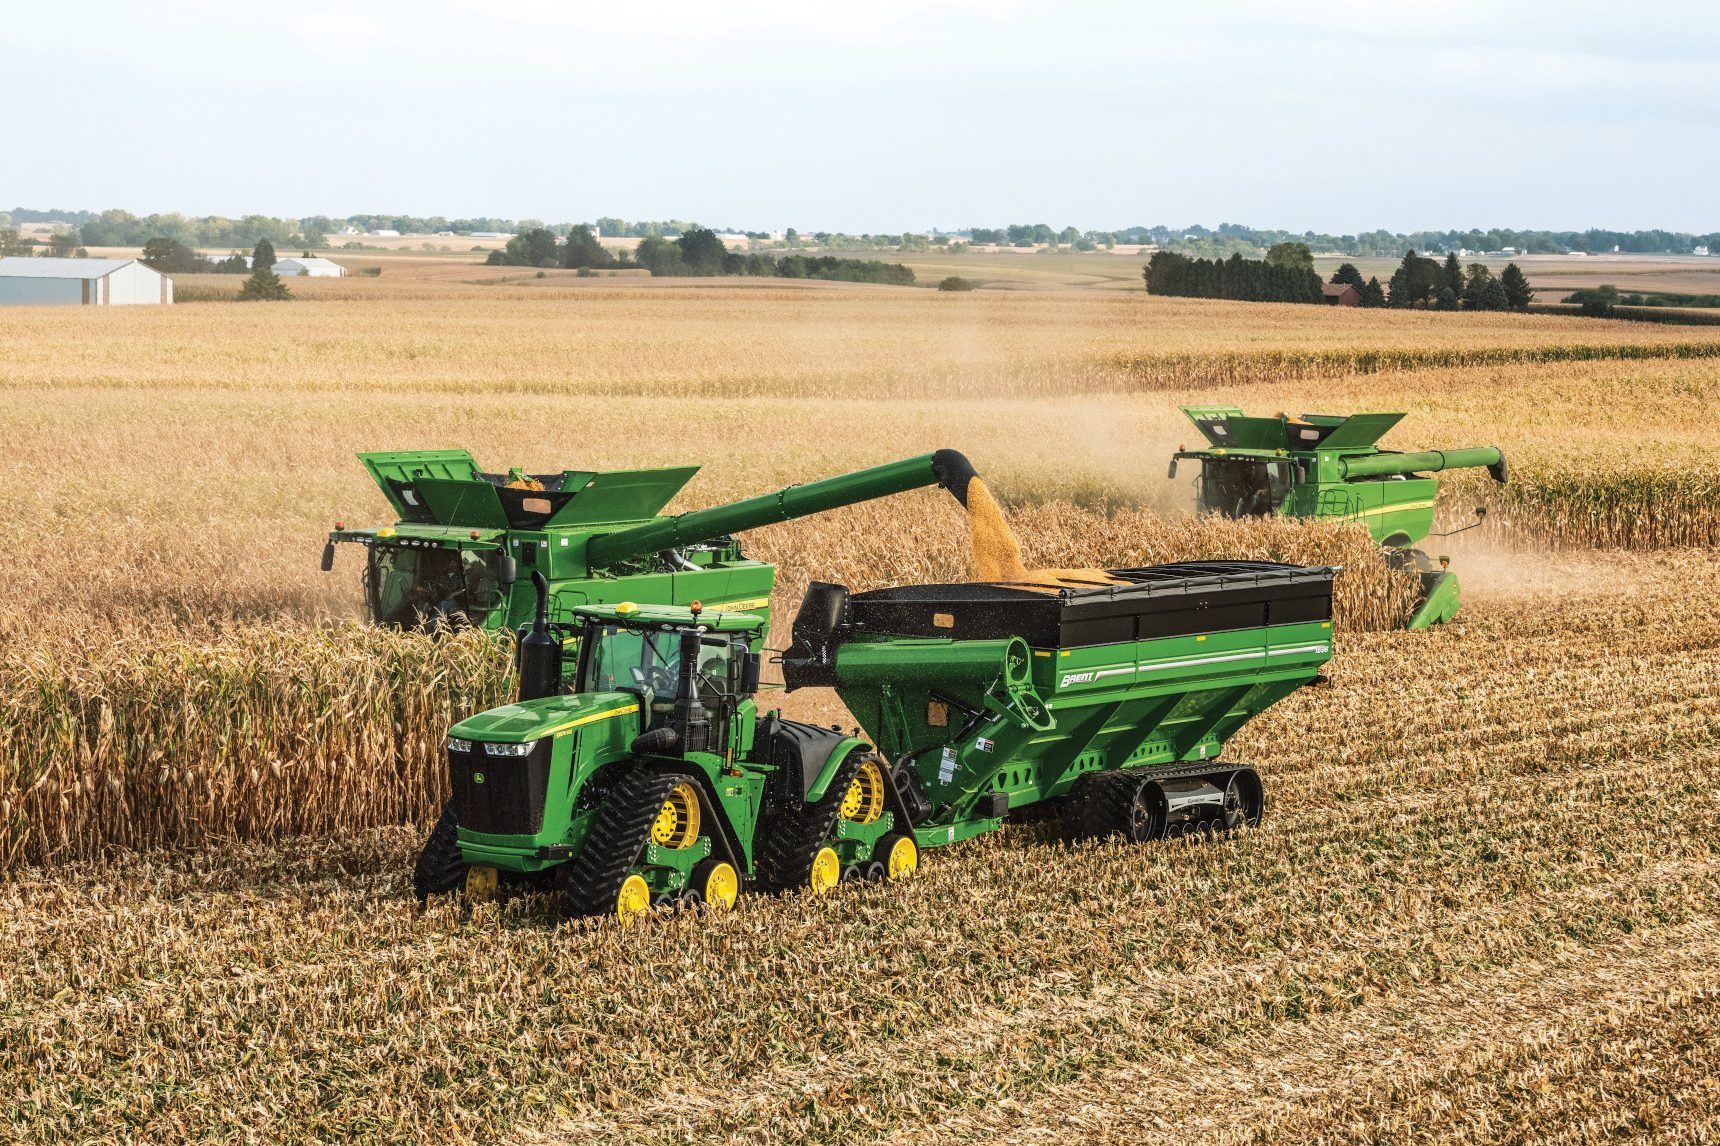 John Deere farm equipment in a corn field